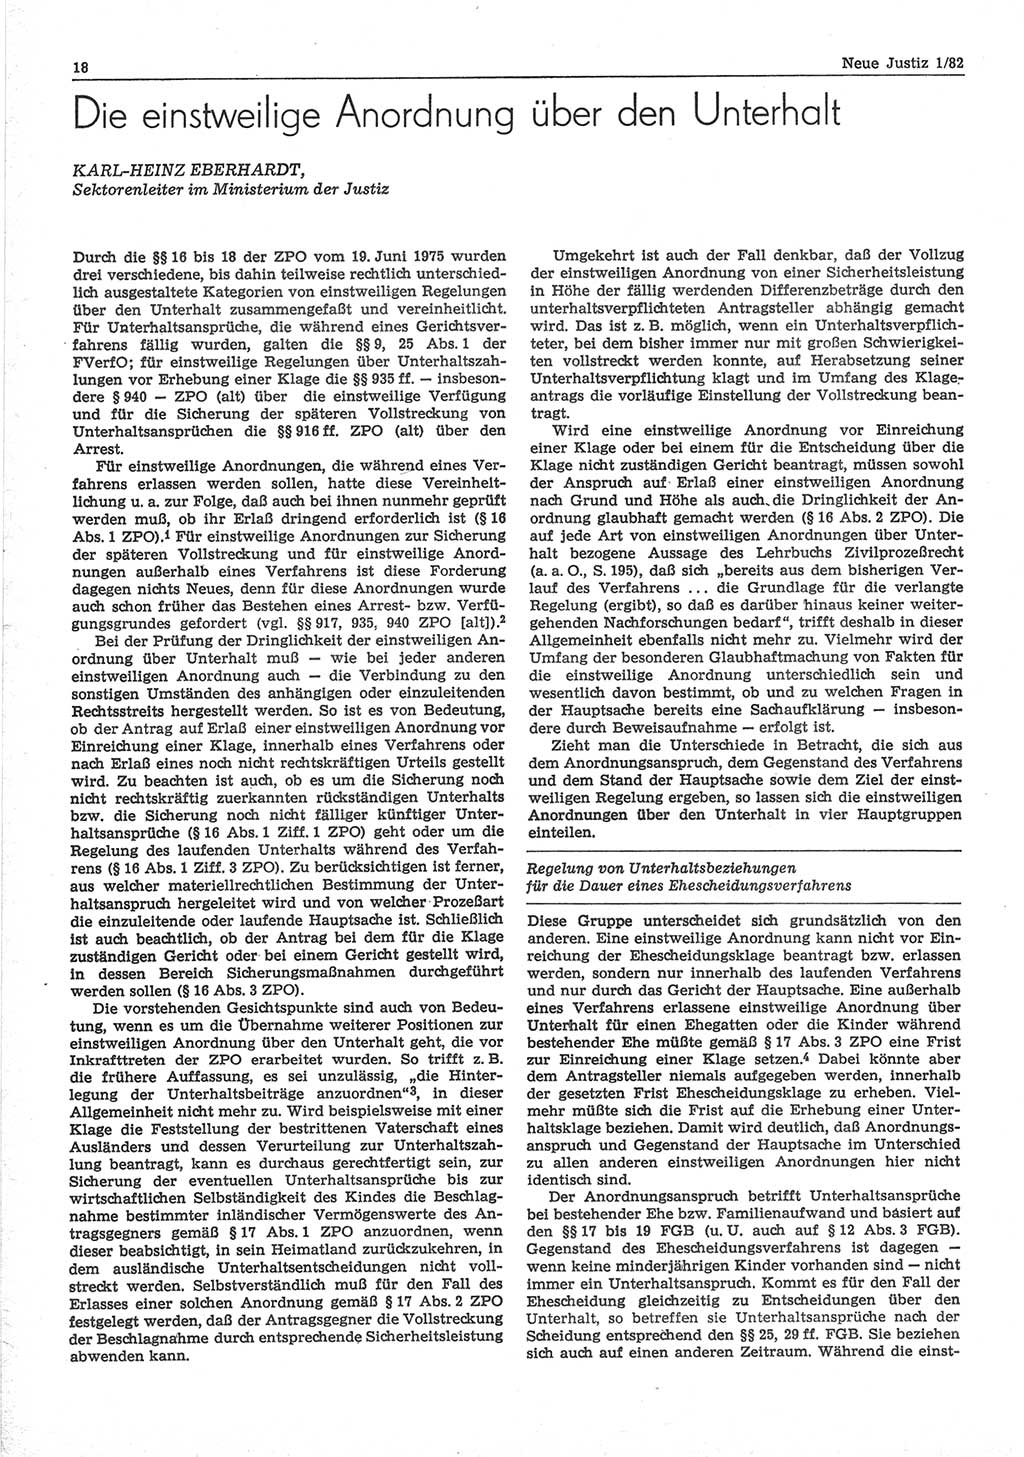 Neue Justiz (NJ), Zeitschrift für sozialistisches Recht und Gesetzlichkeit [Deutsche Demokratische Republik (DDR)], 36. Jahrgang 1982, Seite 18 (NJ DDR 1982, S. 18)